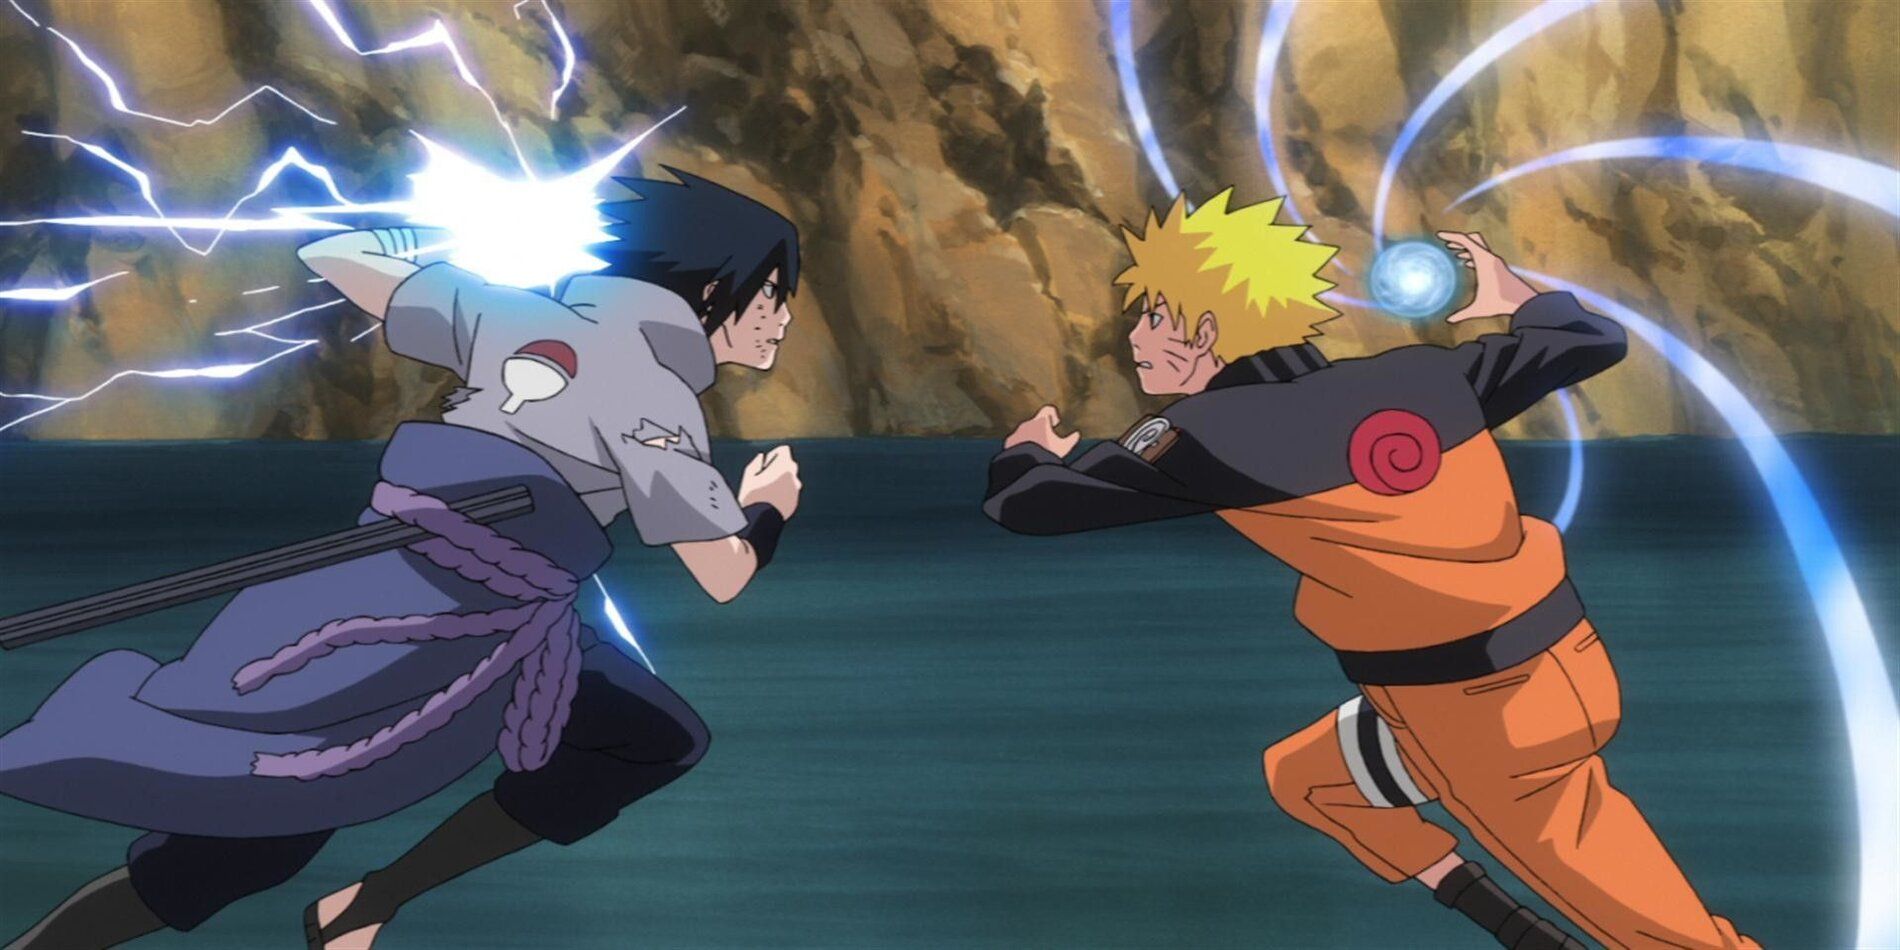 Sasuke and Naruto fighting with Chidori and Rasengan in Naruto.